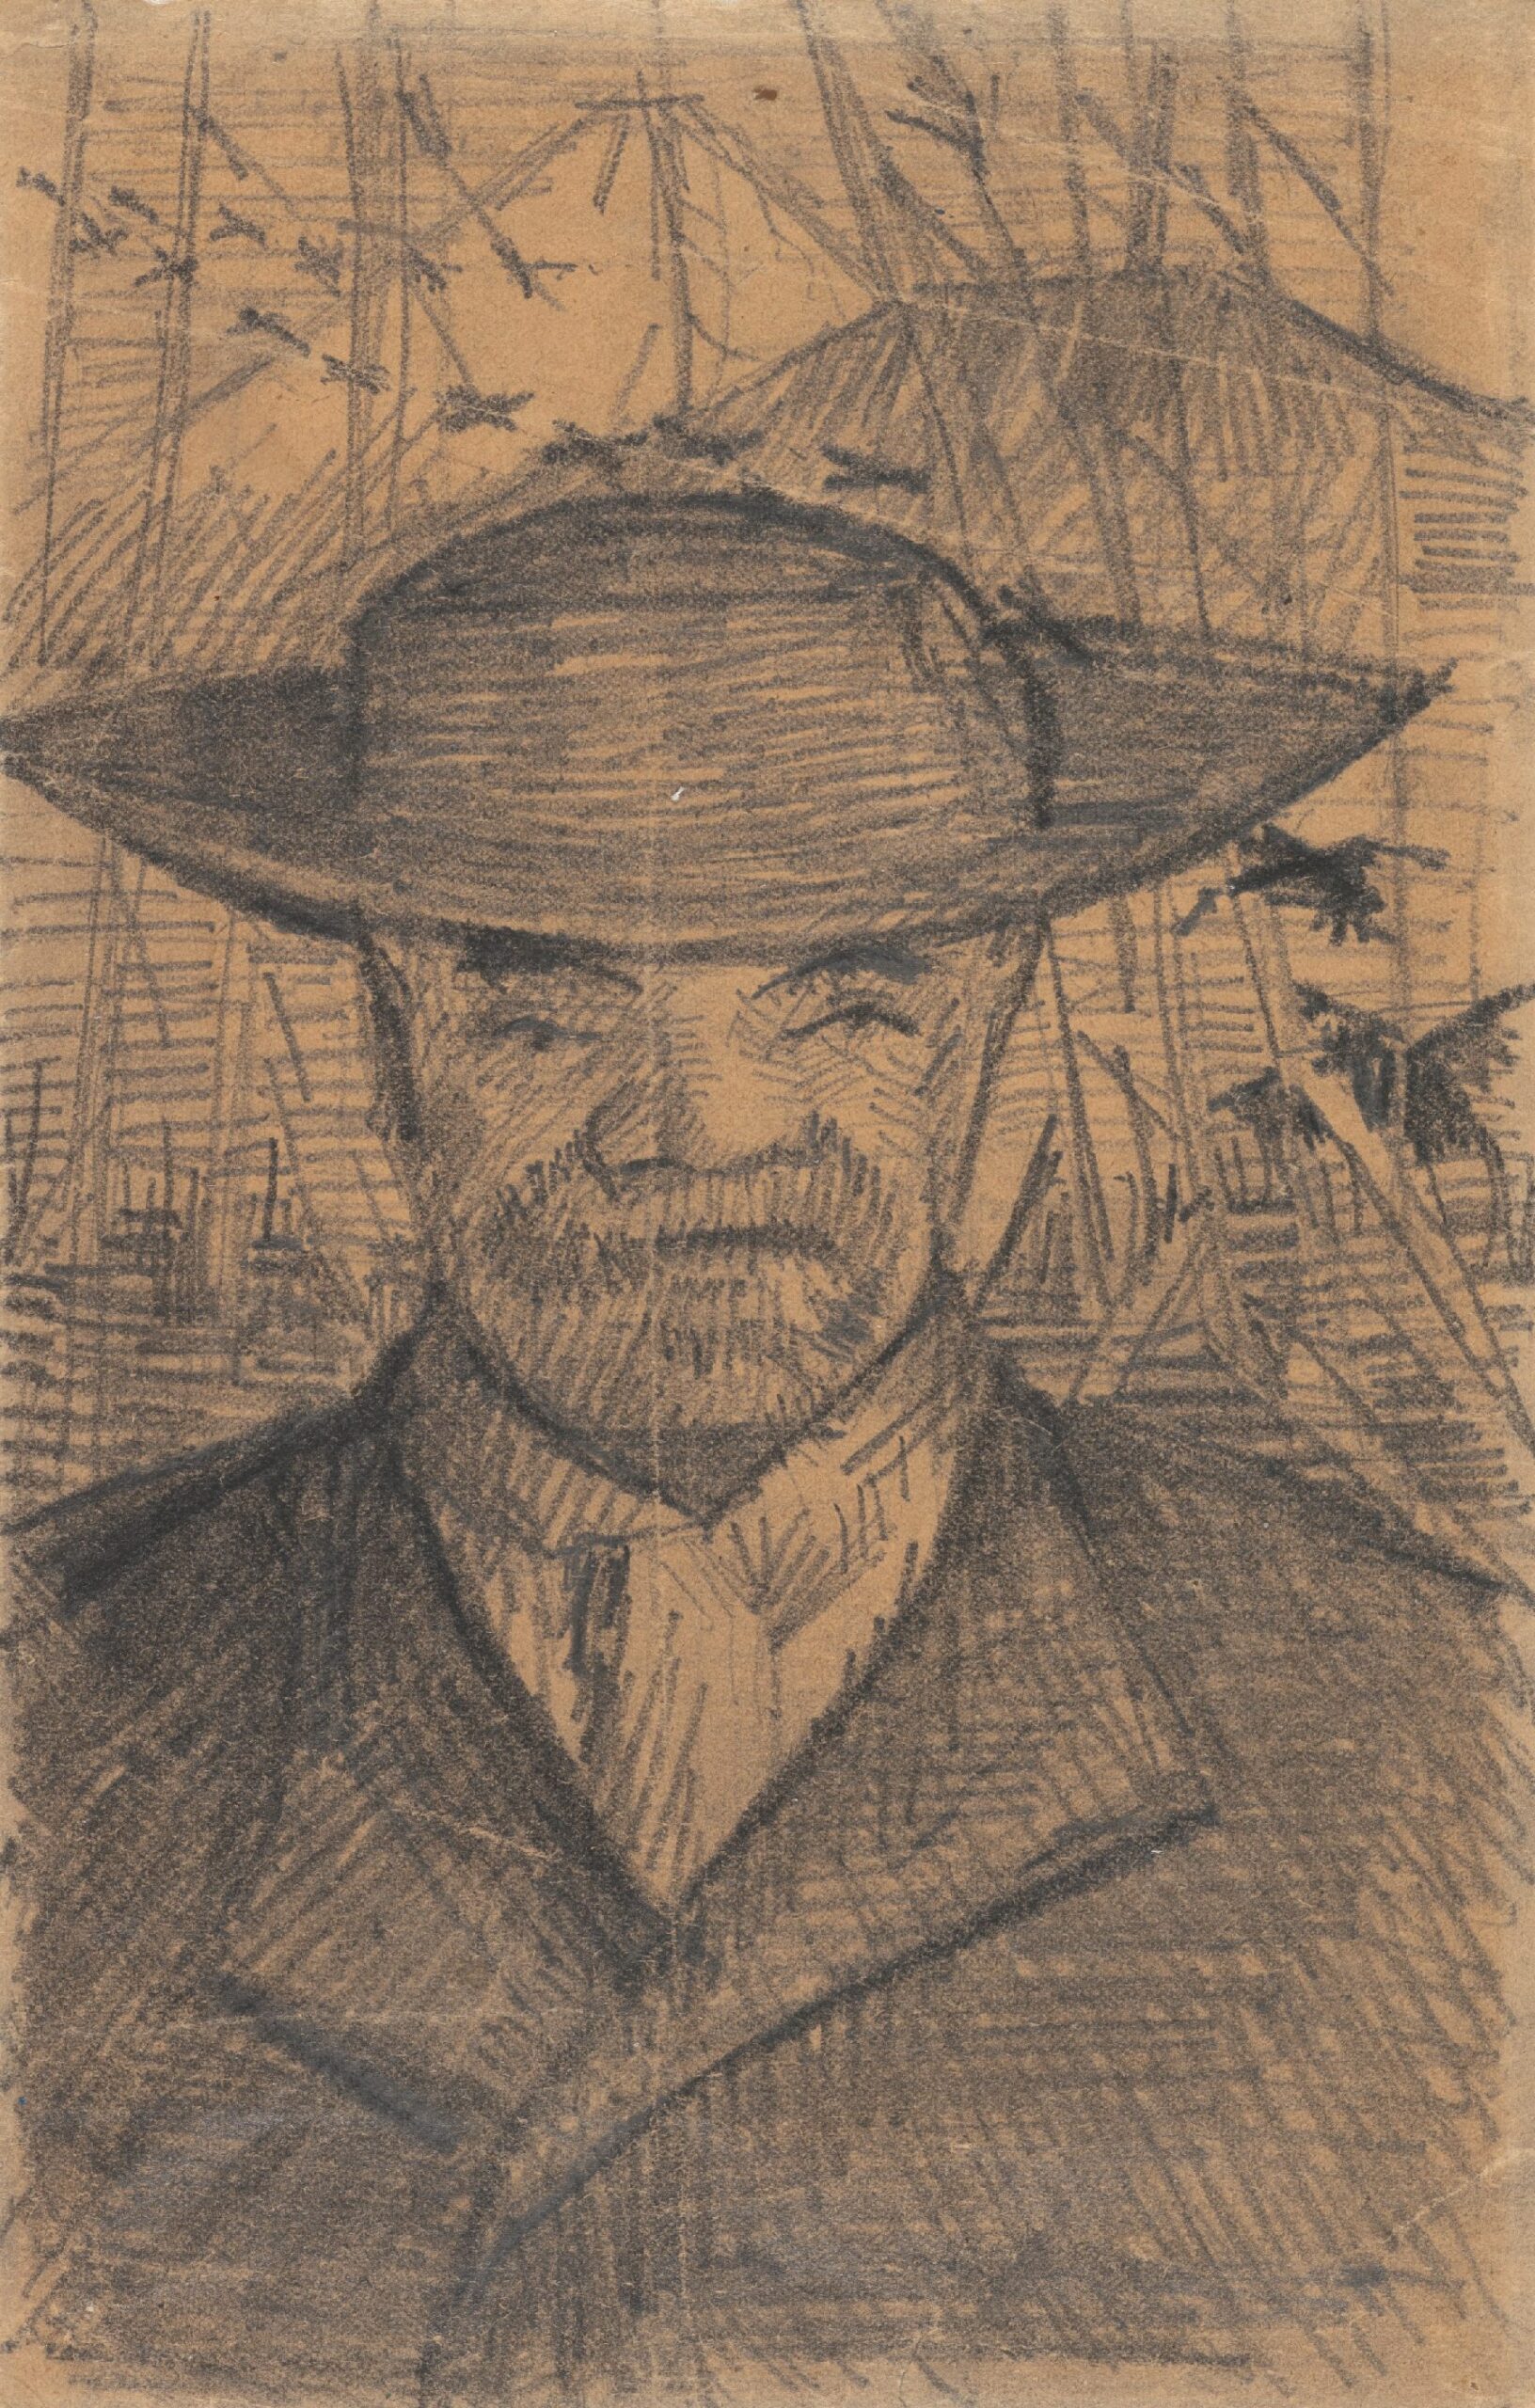 Portret van Père Tanguy Vincent van Gogh (1853 - 1890), Parijs, oktober-december 1887